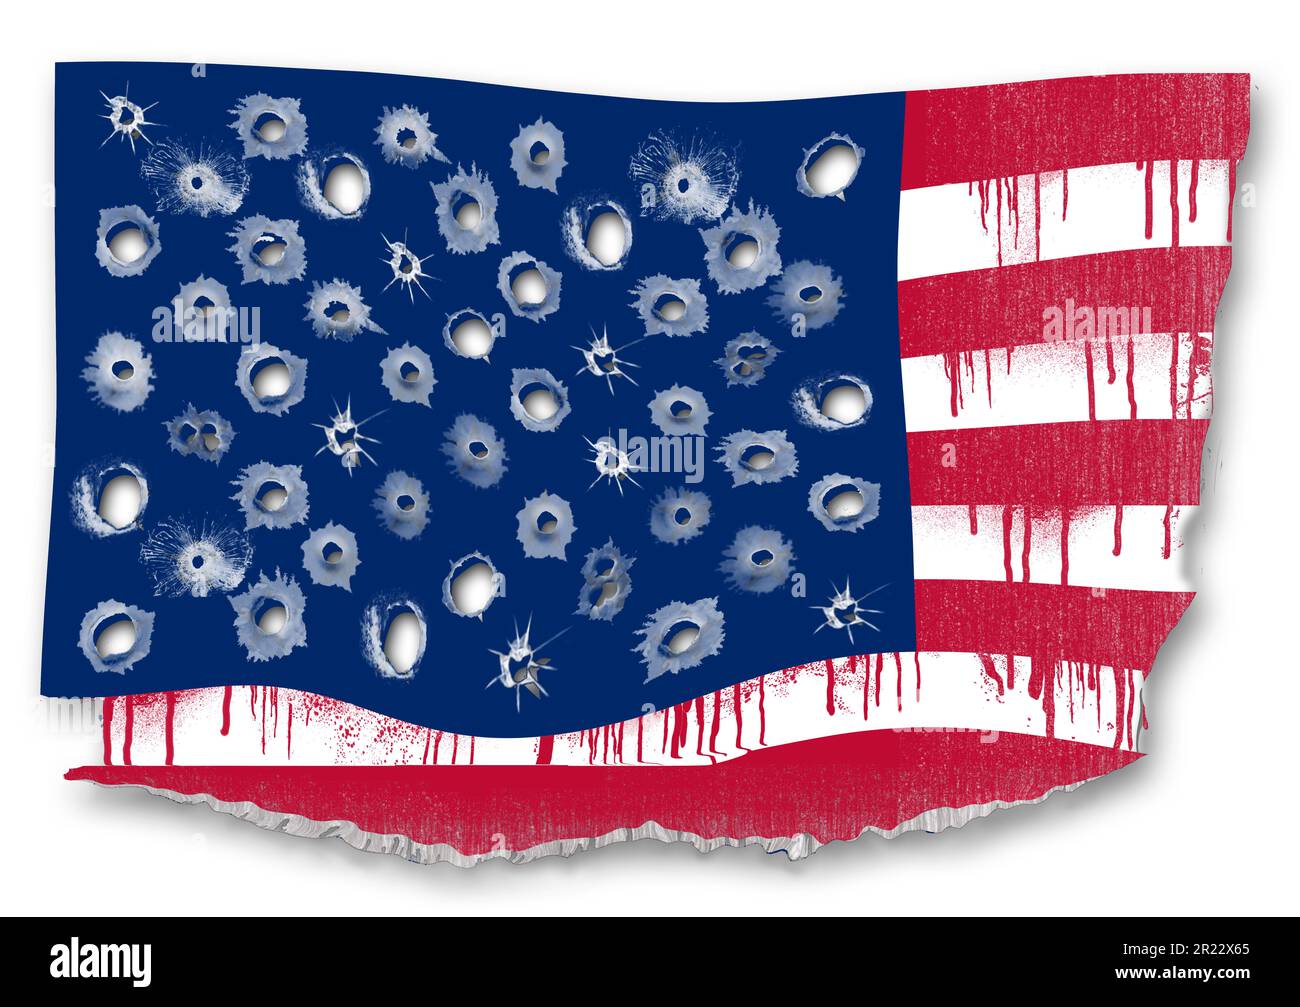 Les vestiges d'un drapeau américain sont déchirés, flattés et remplis de balles et de sang dans une illustration de 3 jours sur la violence par les armes à feu en Amérique. Banque D'Images